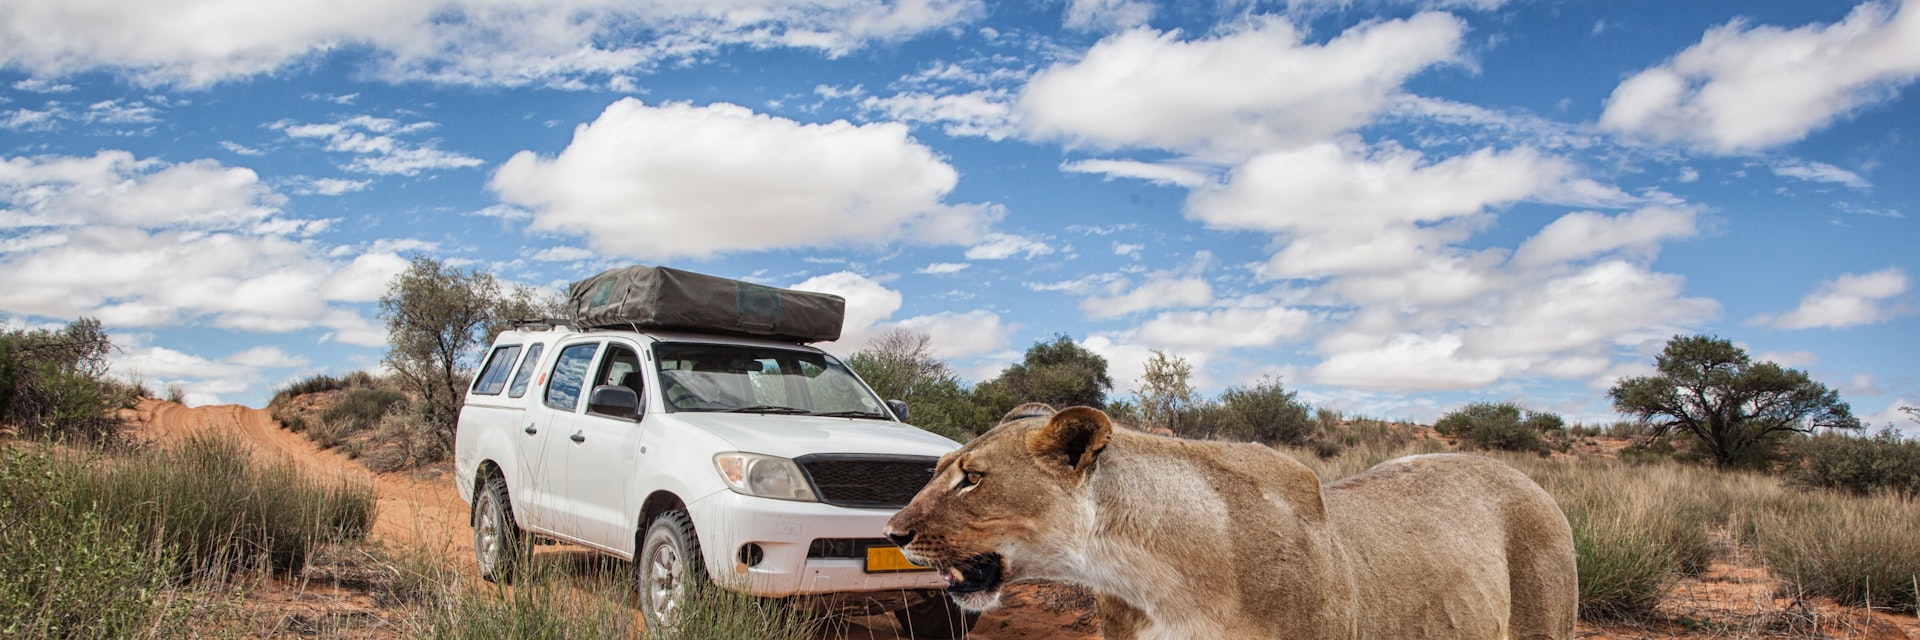 lioness in front of a 4x4 safari car crossing a dirt road in Kalahari desert, Kgalagadi Transfrontier Park, Botswana, Africa